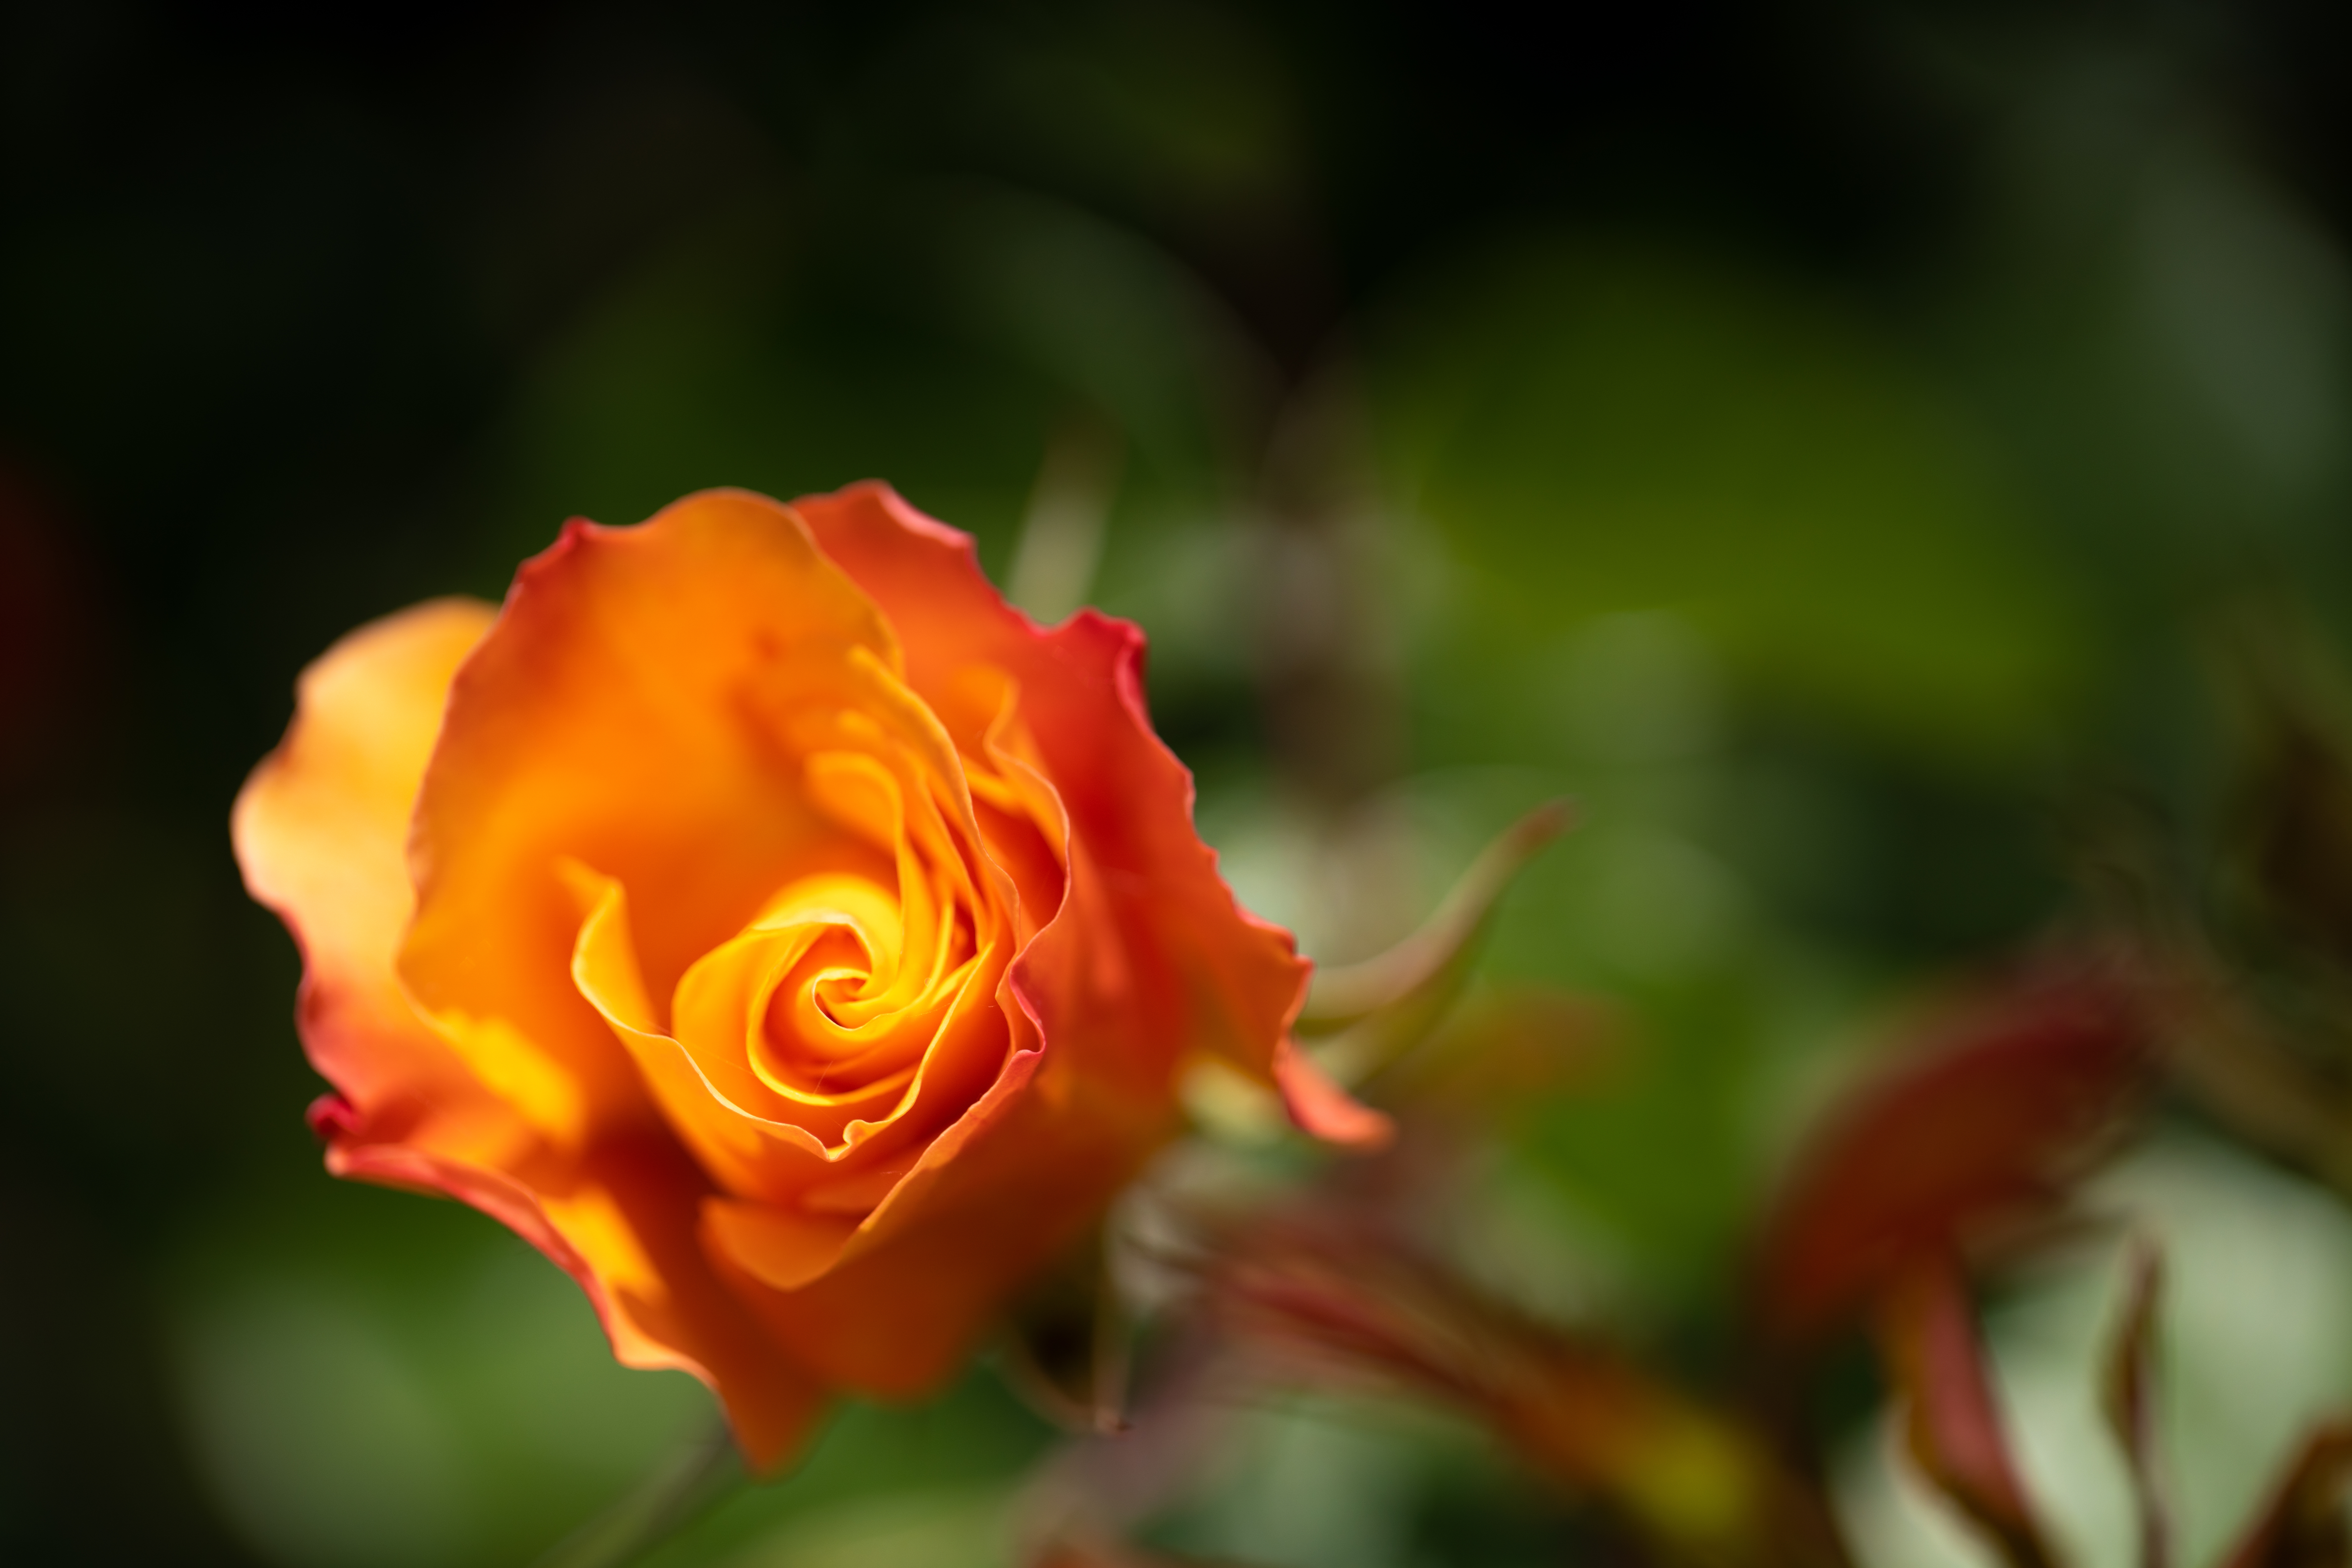 Orange Rose in the Madrid park